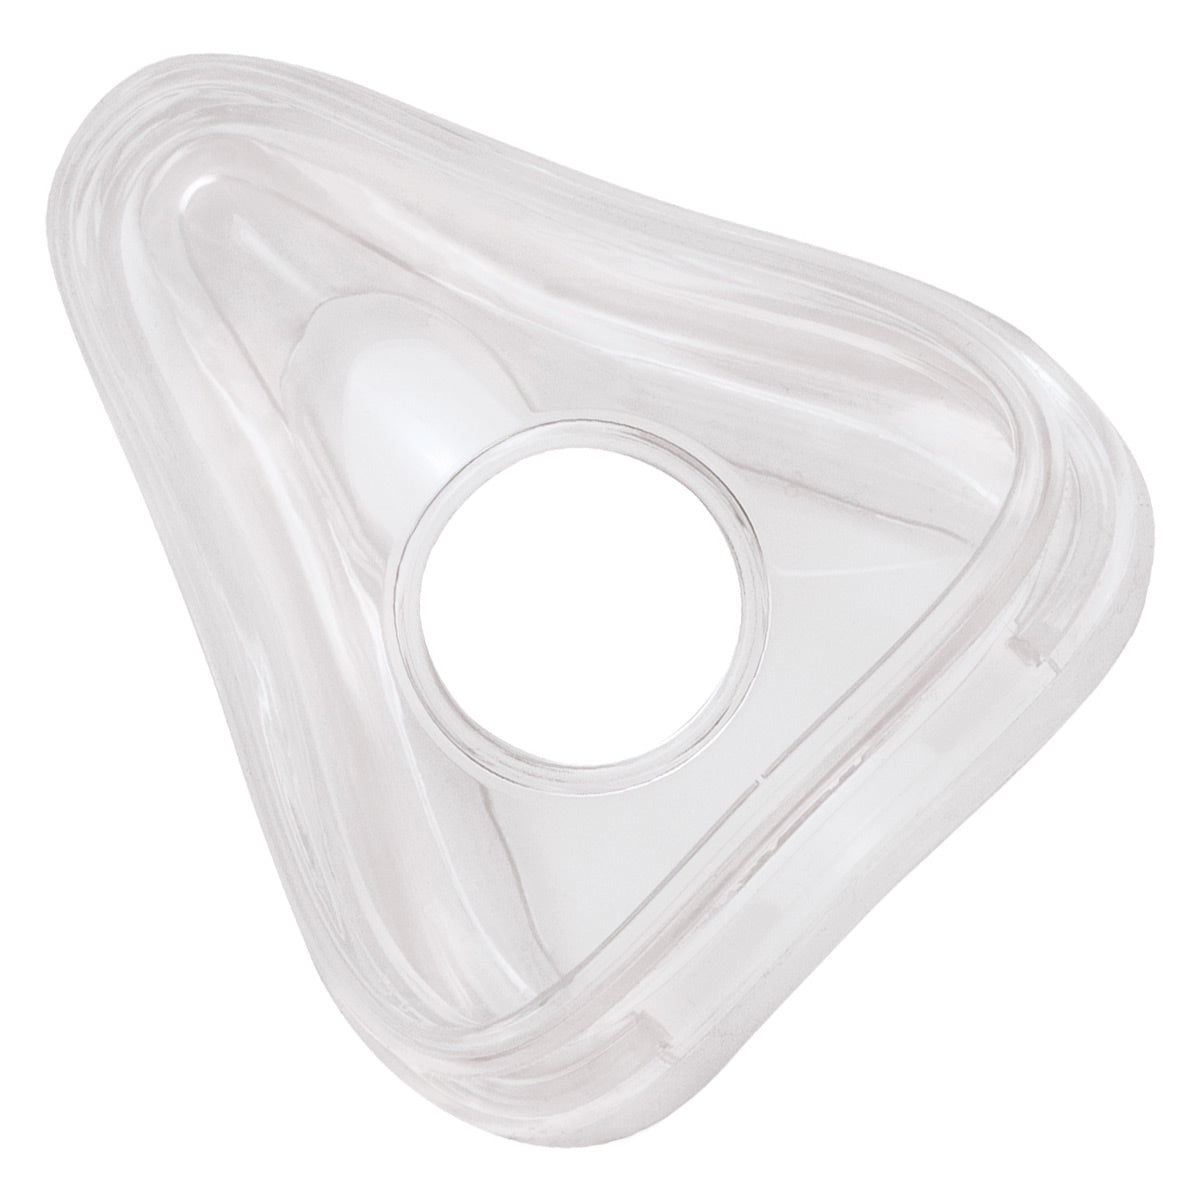 Full Face Cushion (Silicone) for Amara CPAP/BiPAP Masks